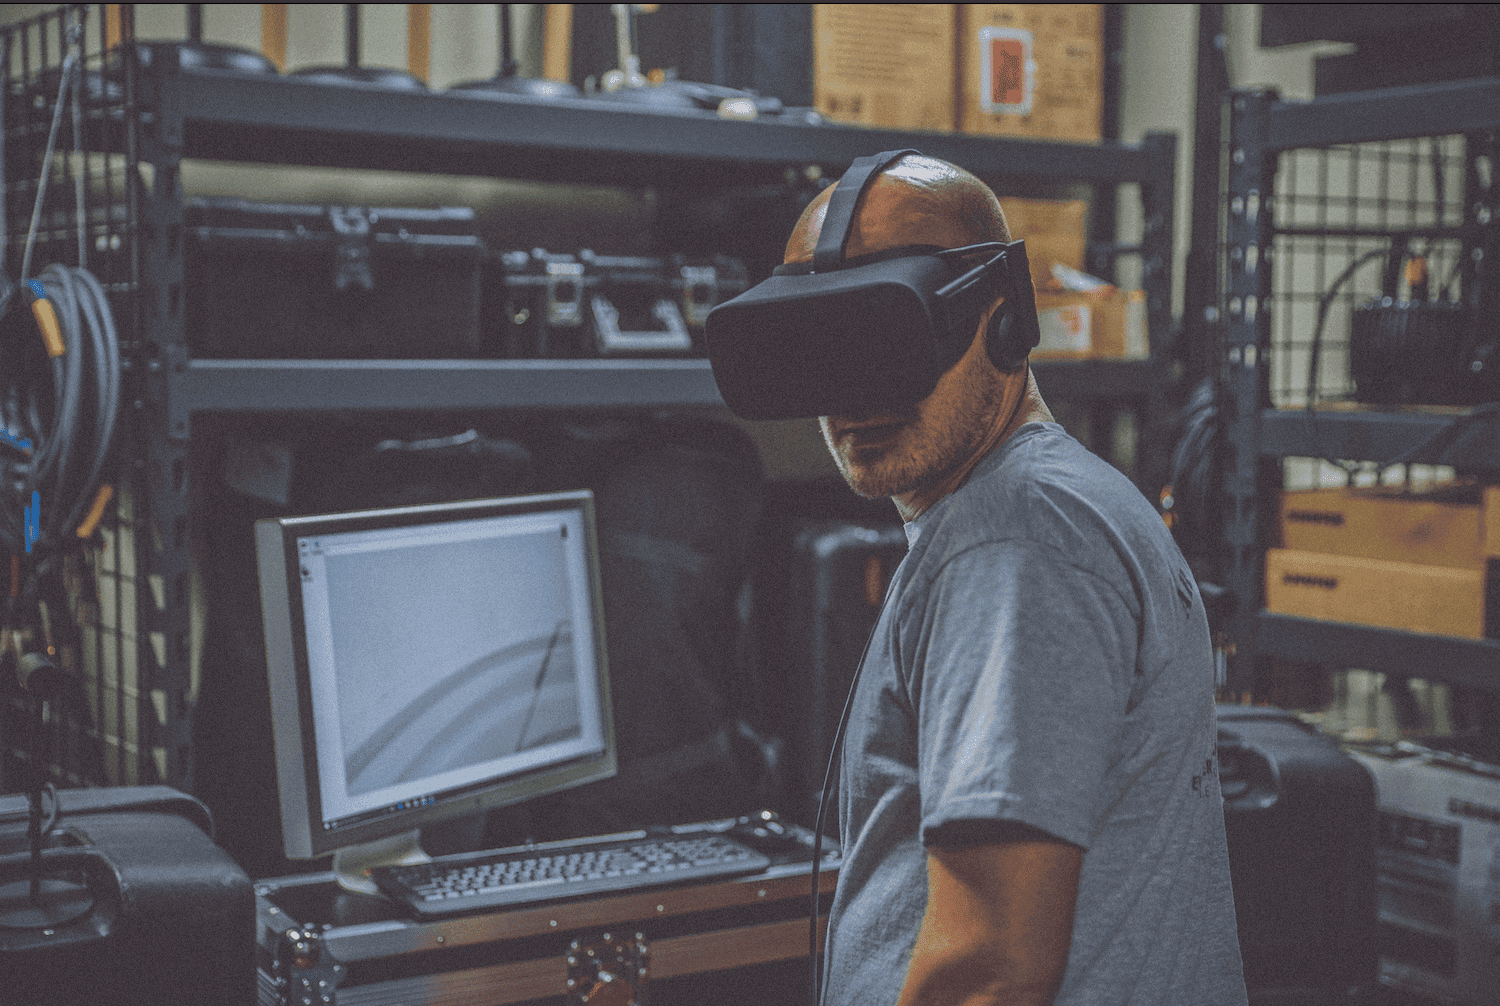 Pyramind Virtual Reality